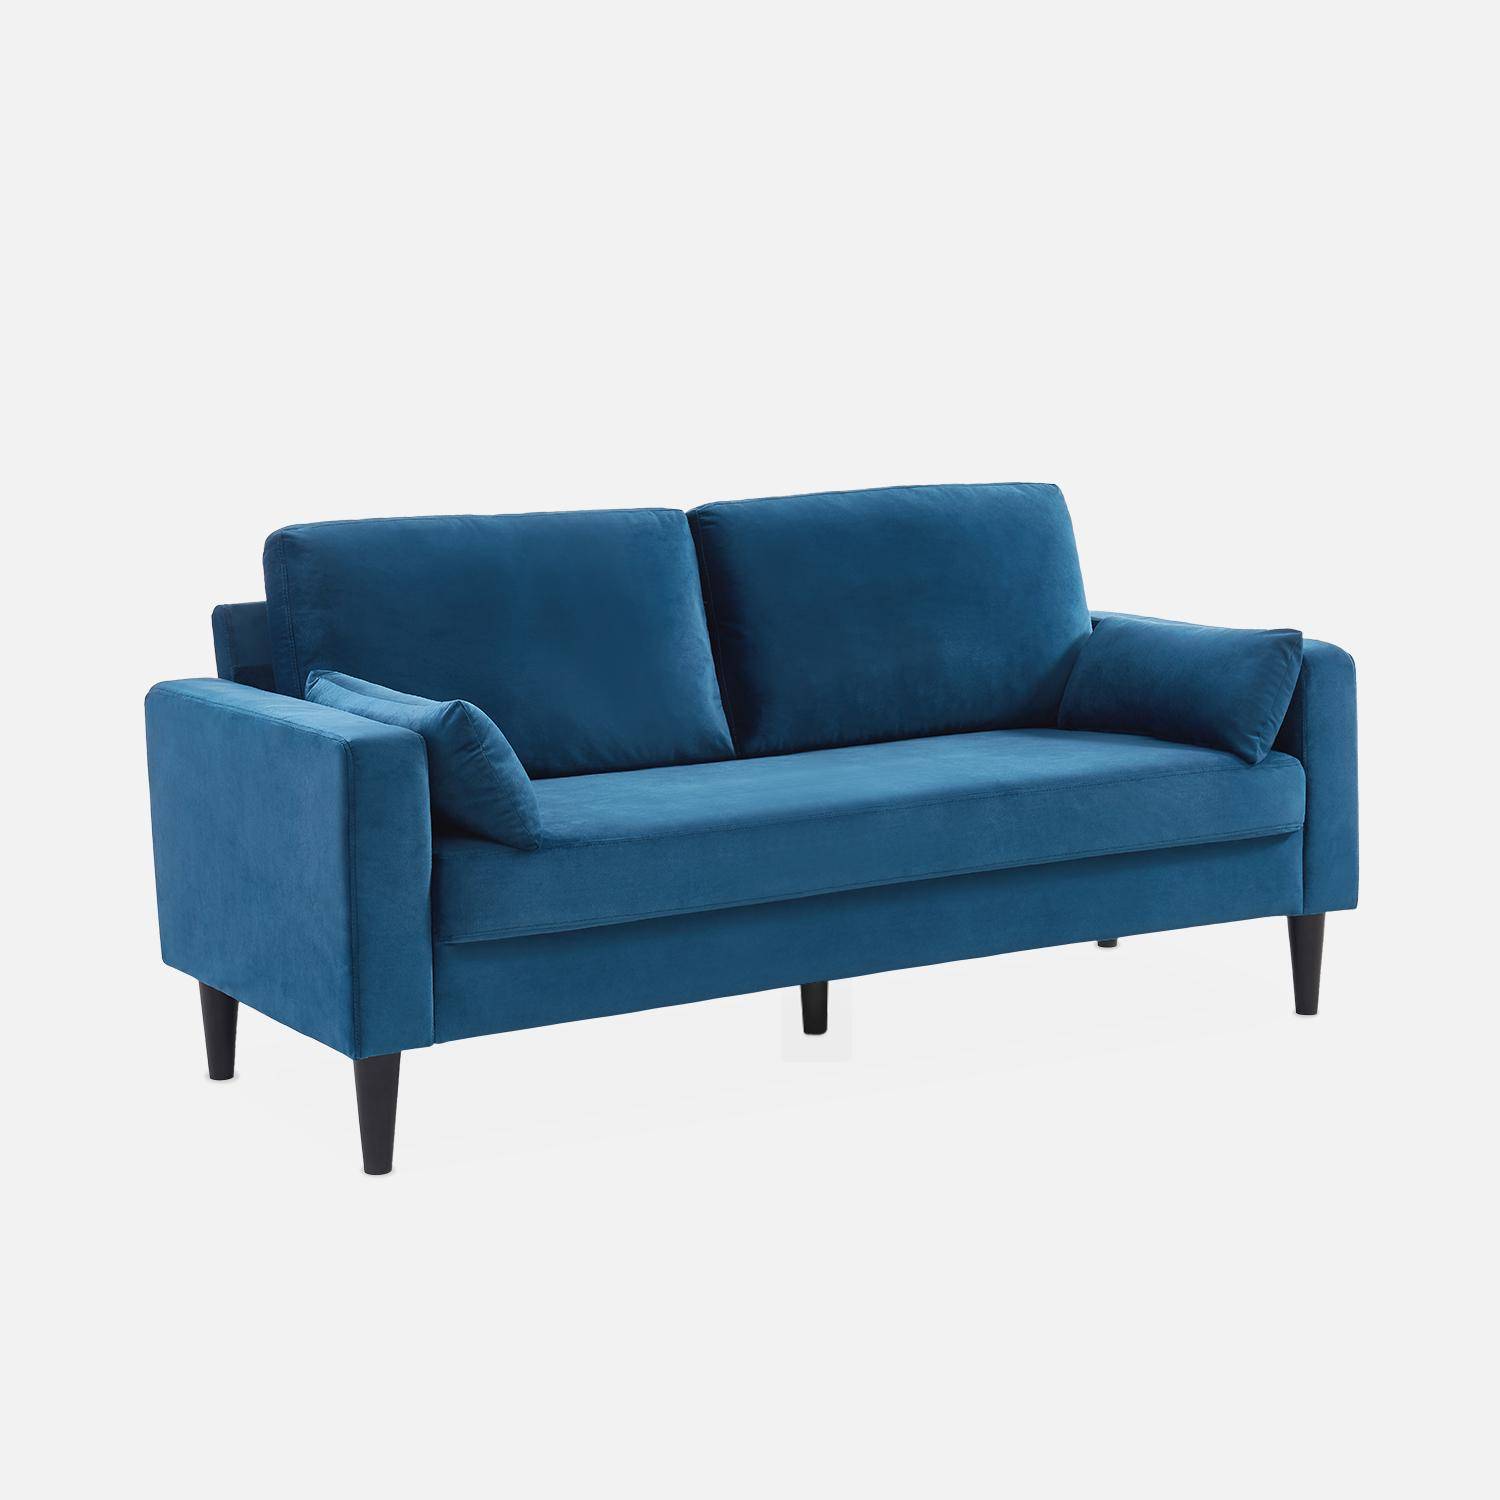 Driezits sofa van blauw velours - Bjorn - 3-zits bank met houten poten, scandinavische stijl   Photo3